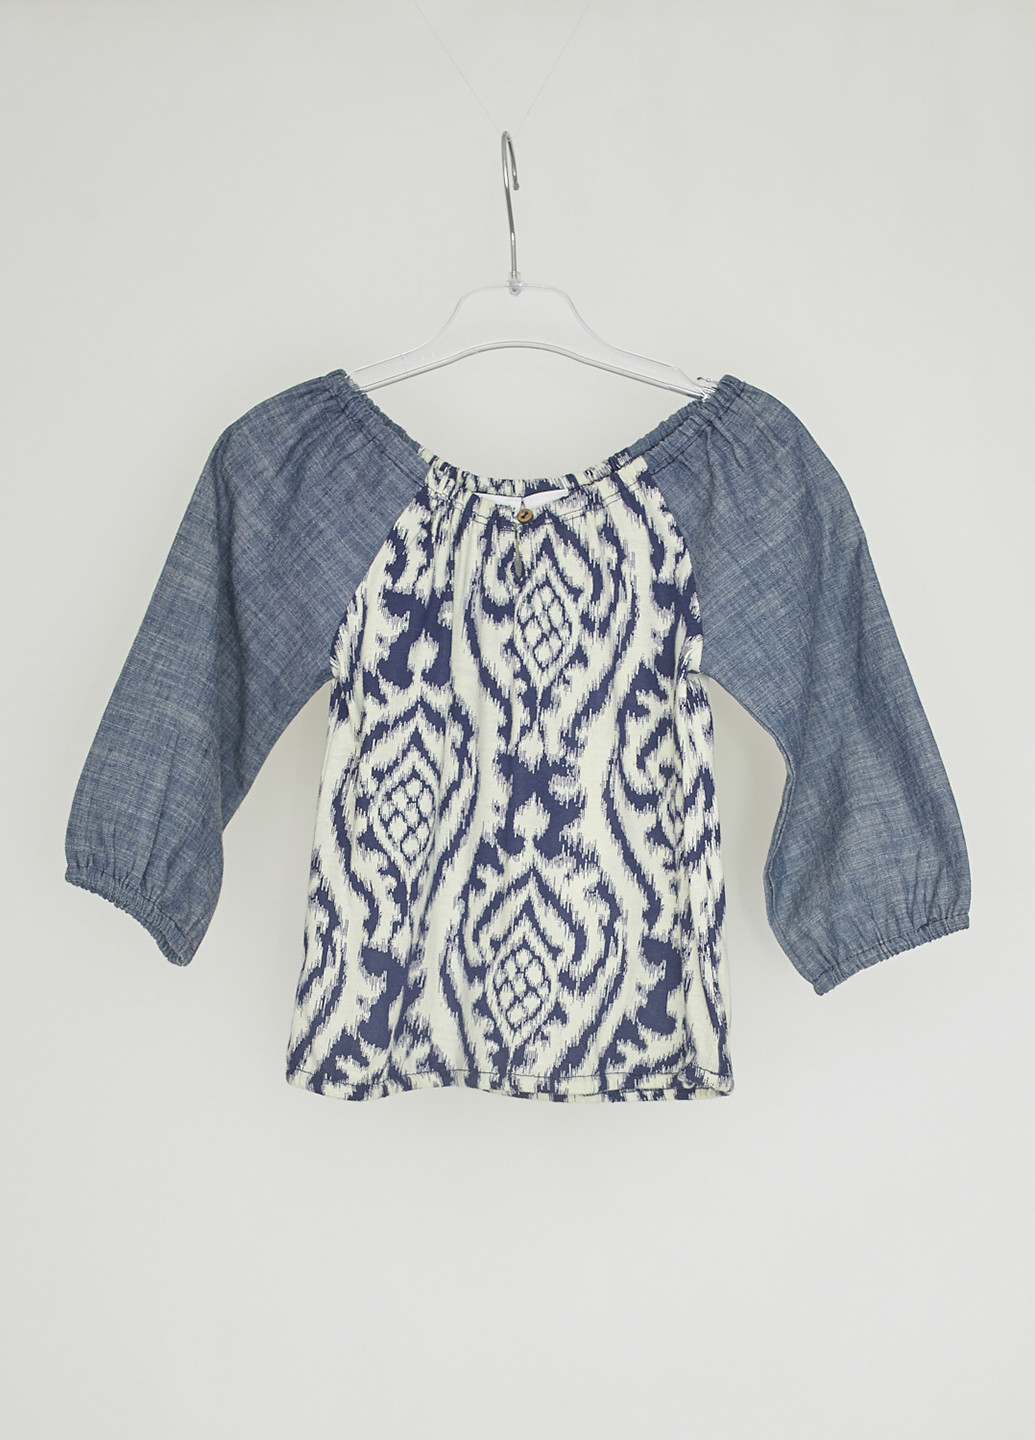 Синяя с абстрактным узором блузка Roxy летняя